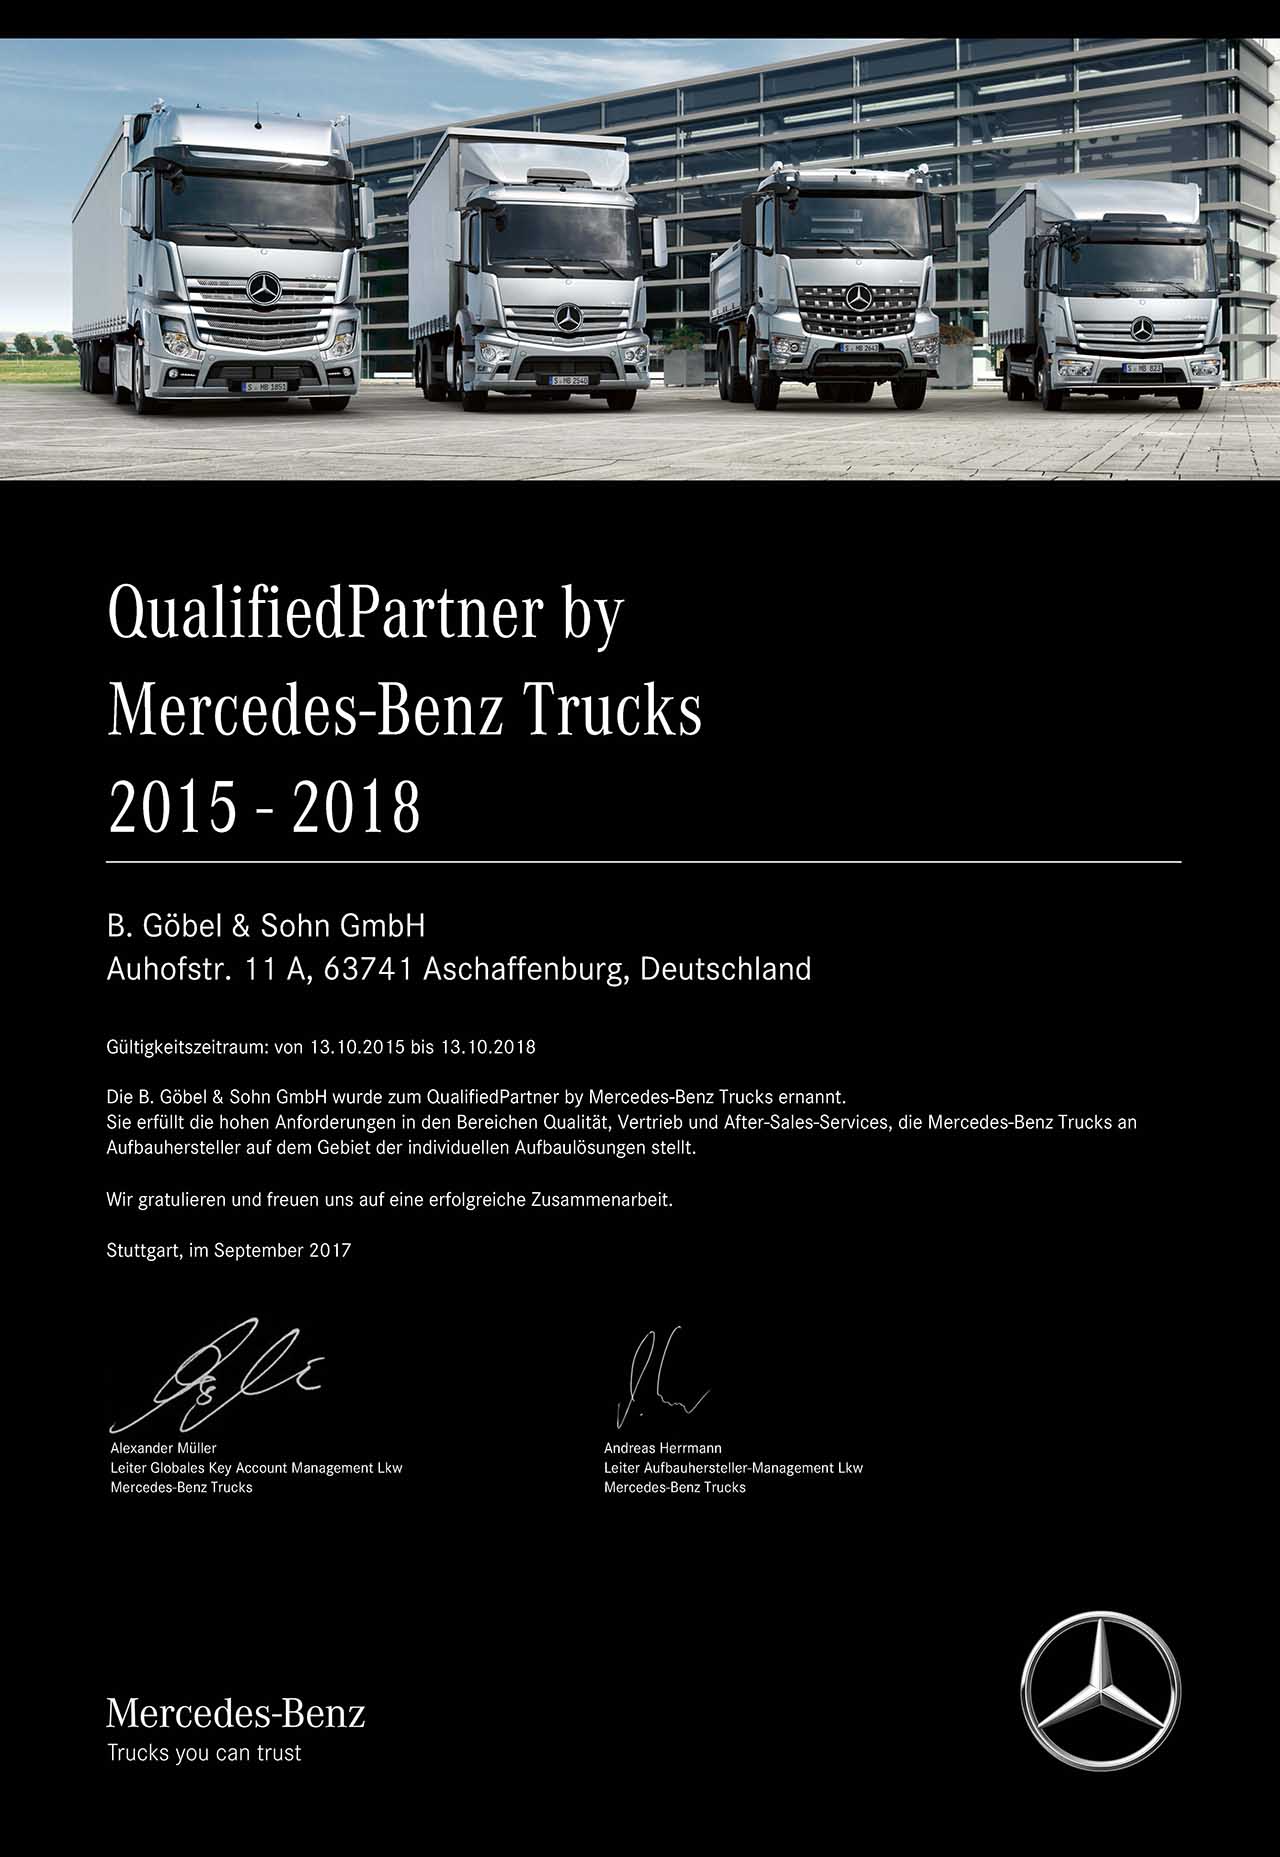 Abbildung der Zertifizierung von Mercedes-Benz Trucks